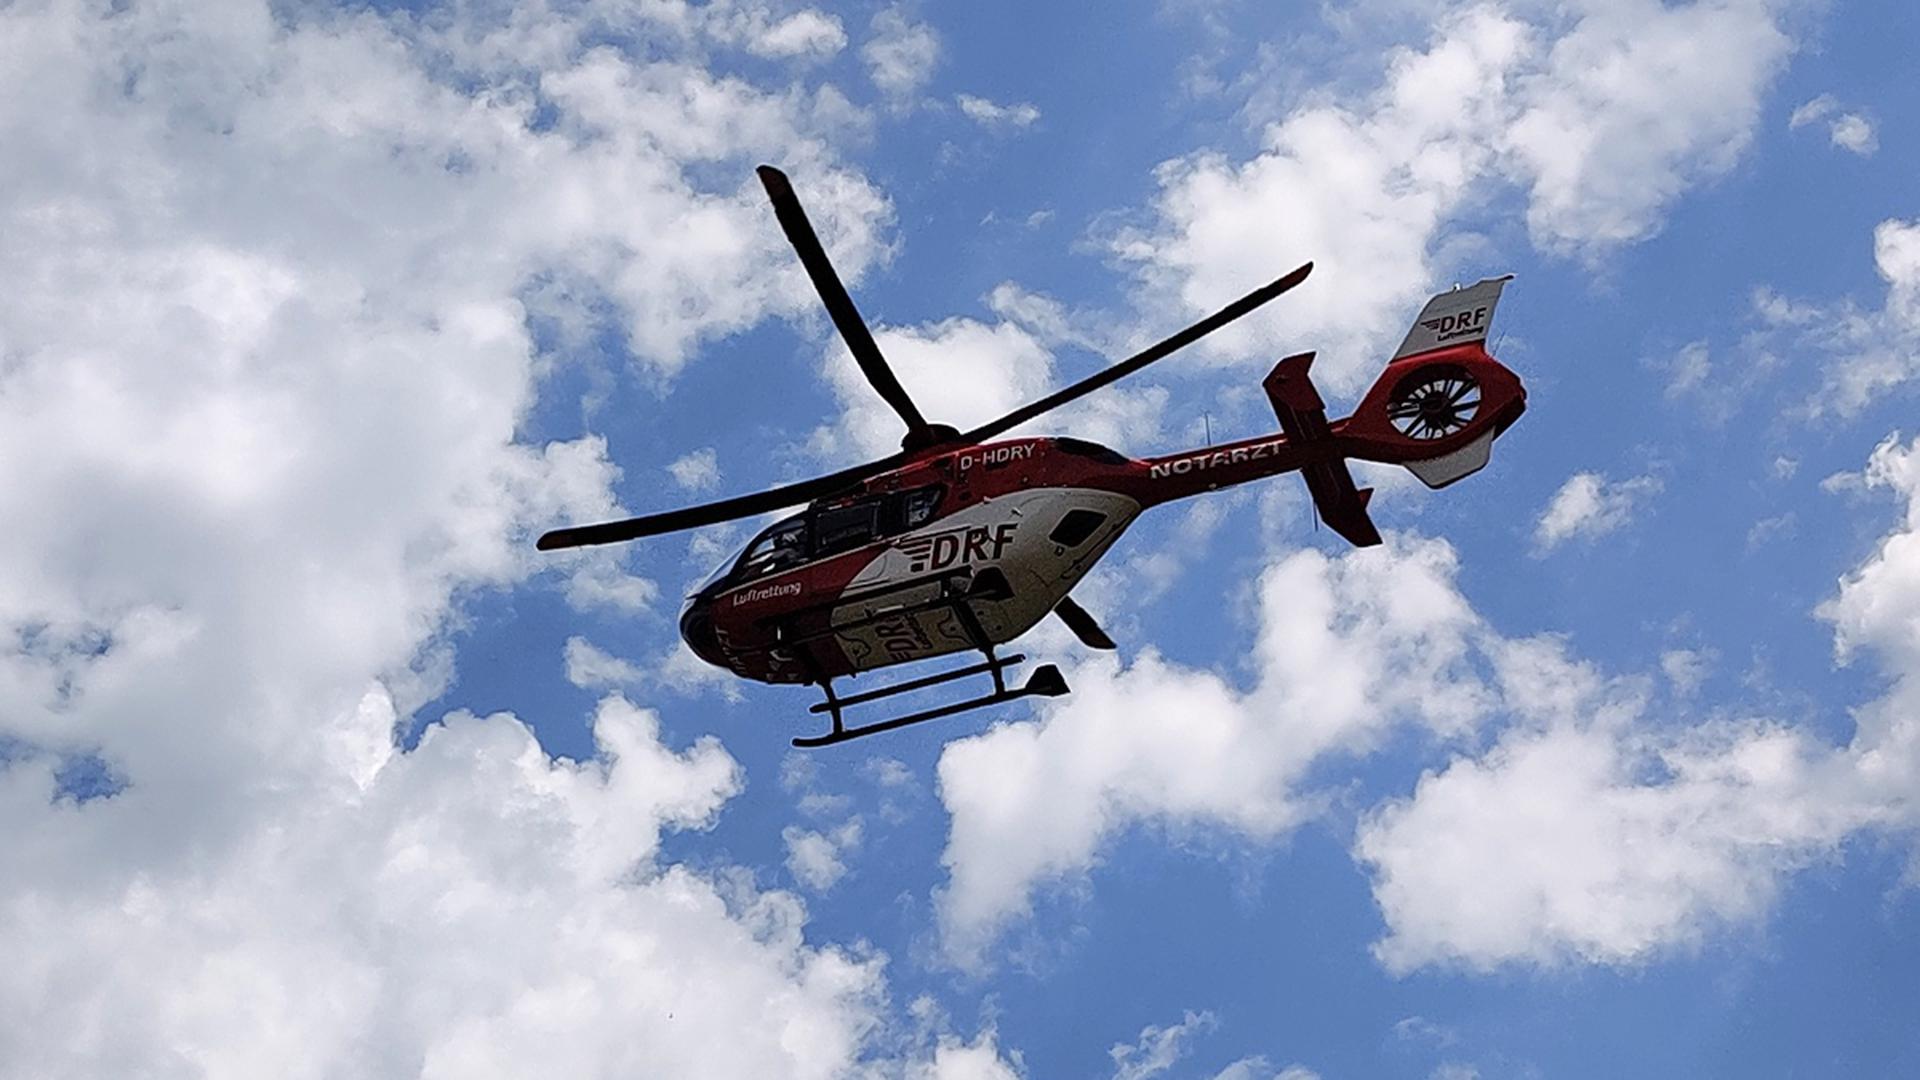 Symbolbild DRK Forbach Schwarzwald Luftrettung Hubschrauber